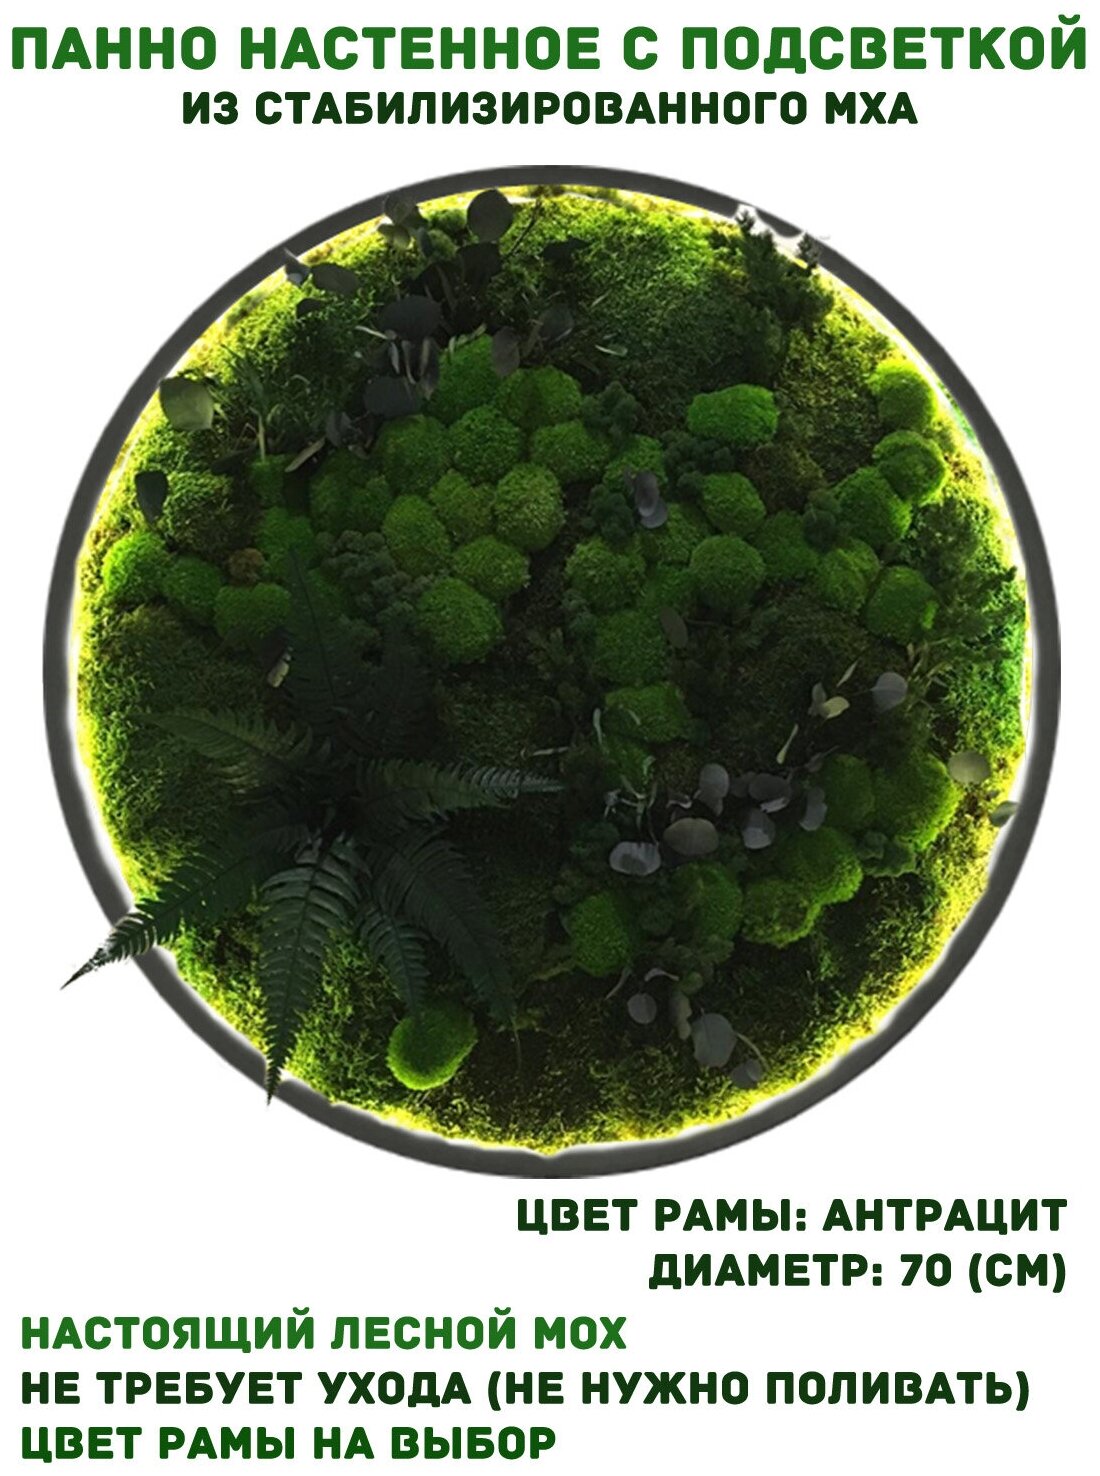 Круглое панно из стабилизированно мха GardenGo с подсветкой в рамке цвета антрацит диаметр 70 см, цвет мха зеленый